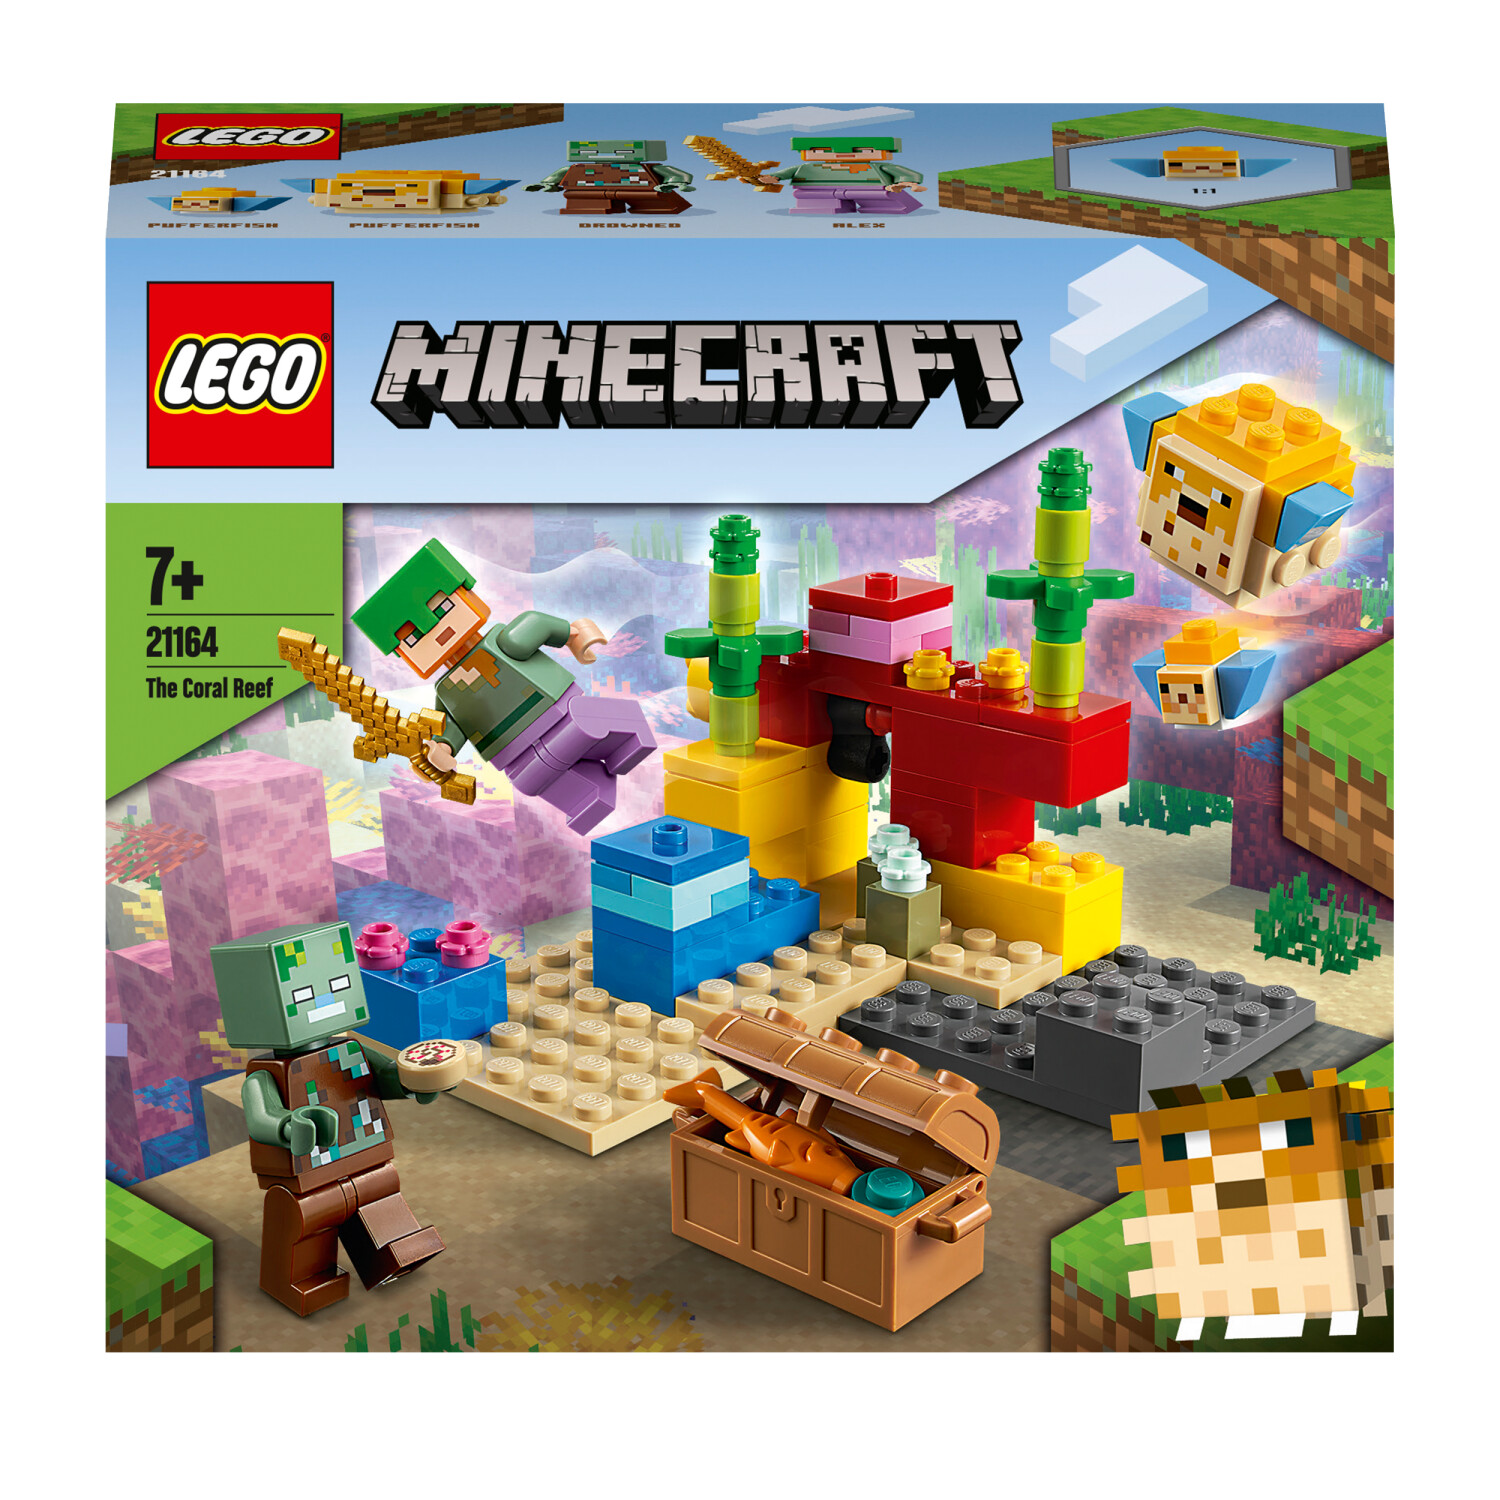 LEGO Minecraft - Le crâne géant (21145) au meilleur prix sur